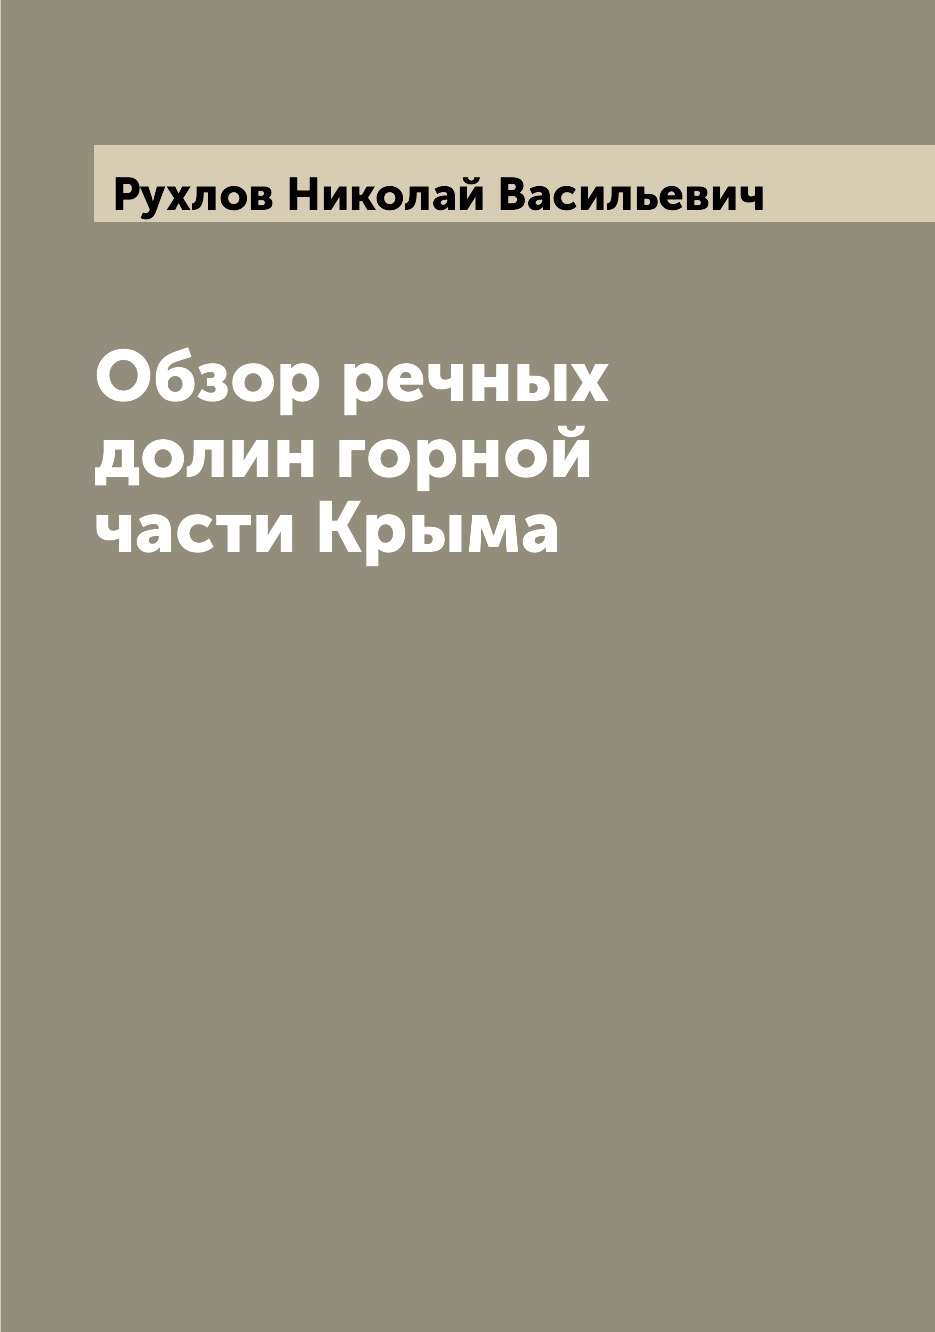 фото Книга обзор речных долин горной части крыма archive publica